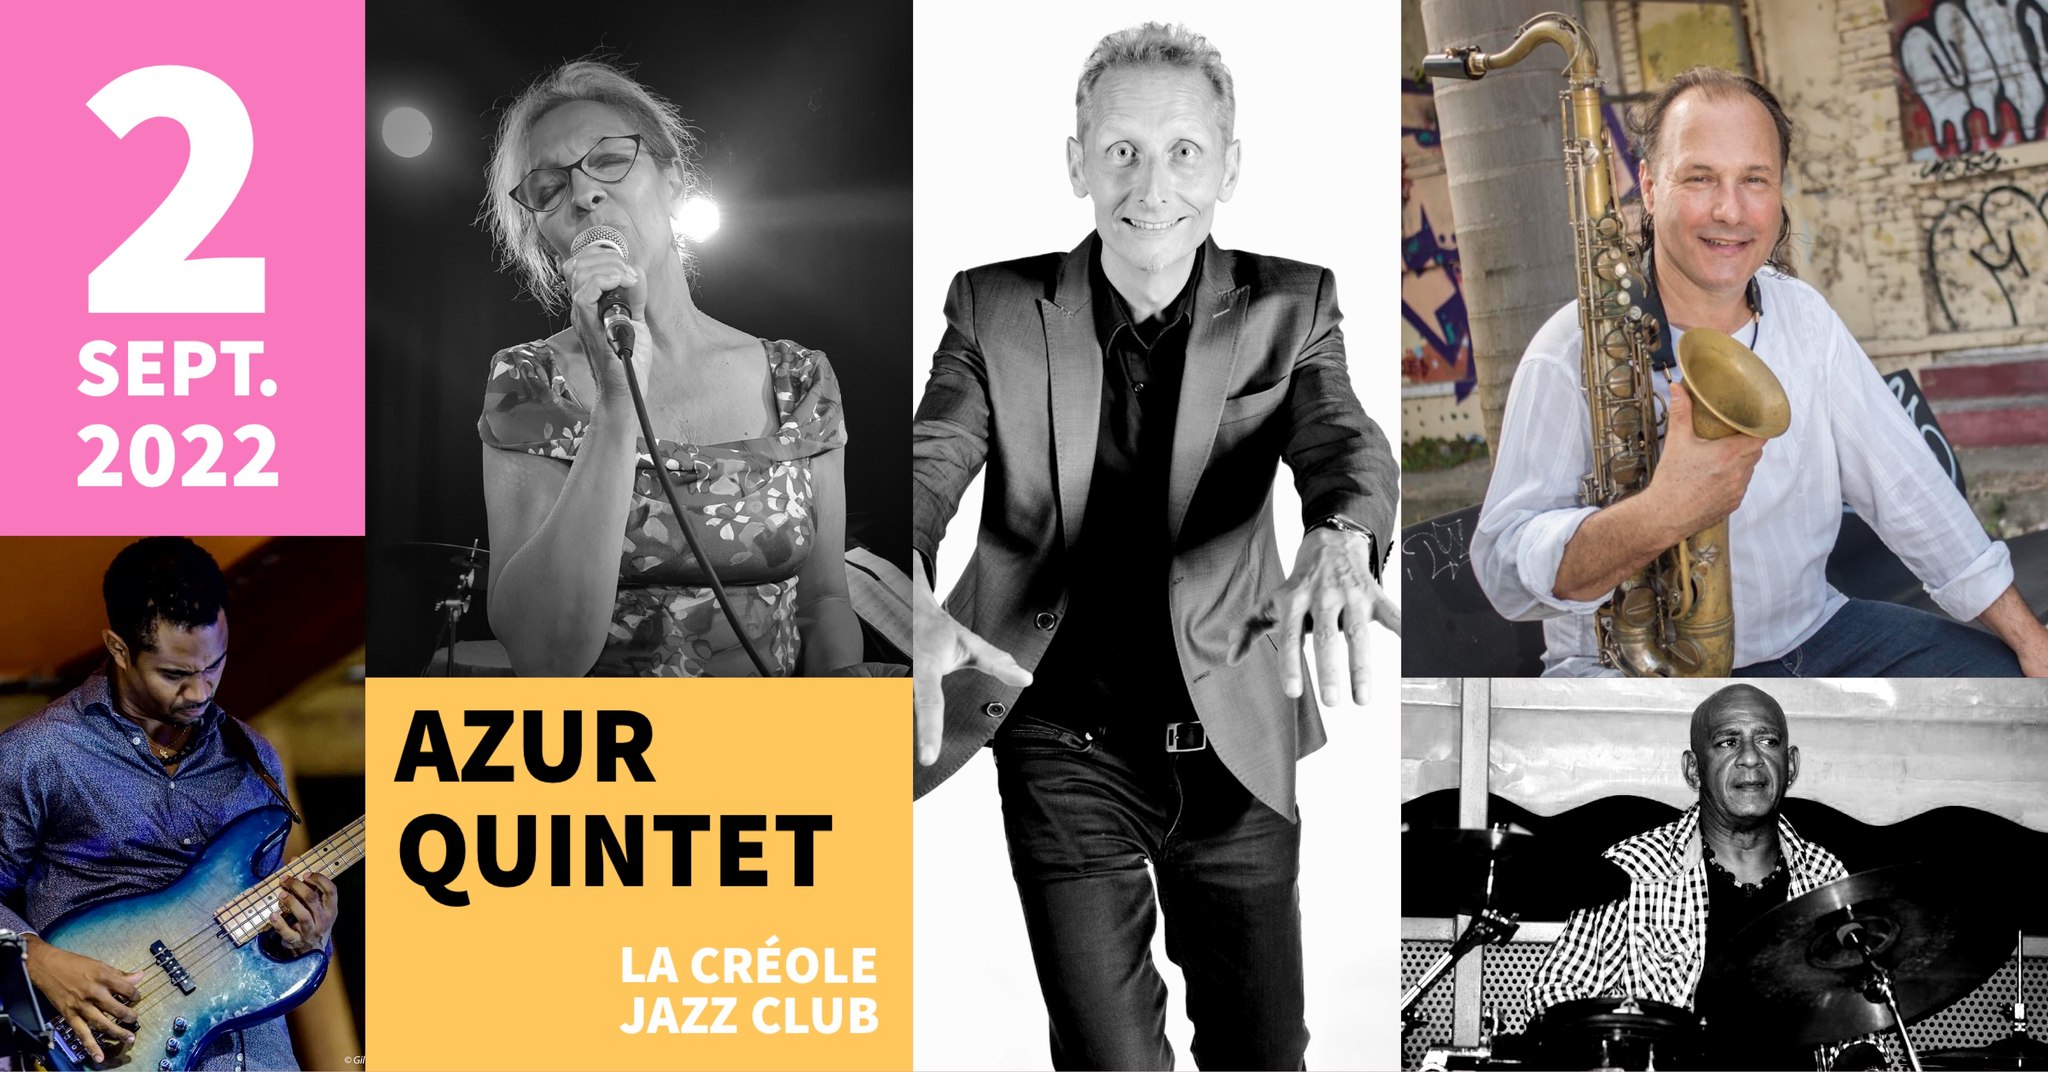 Fabrice Devienne Azur Quintet